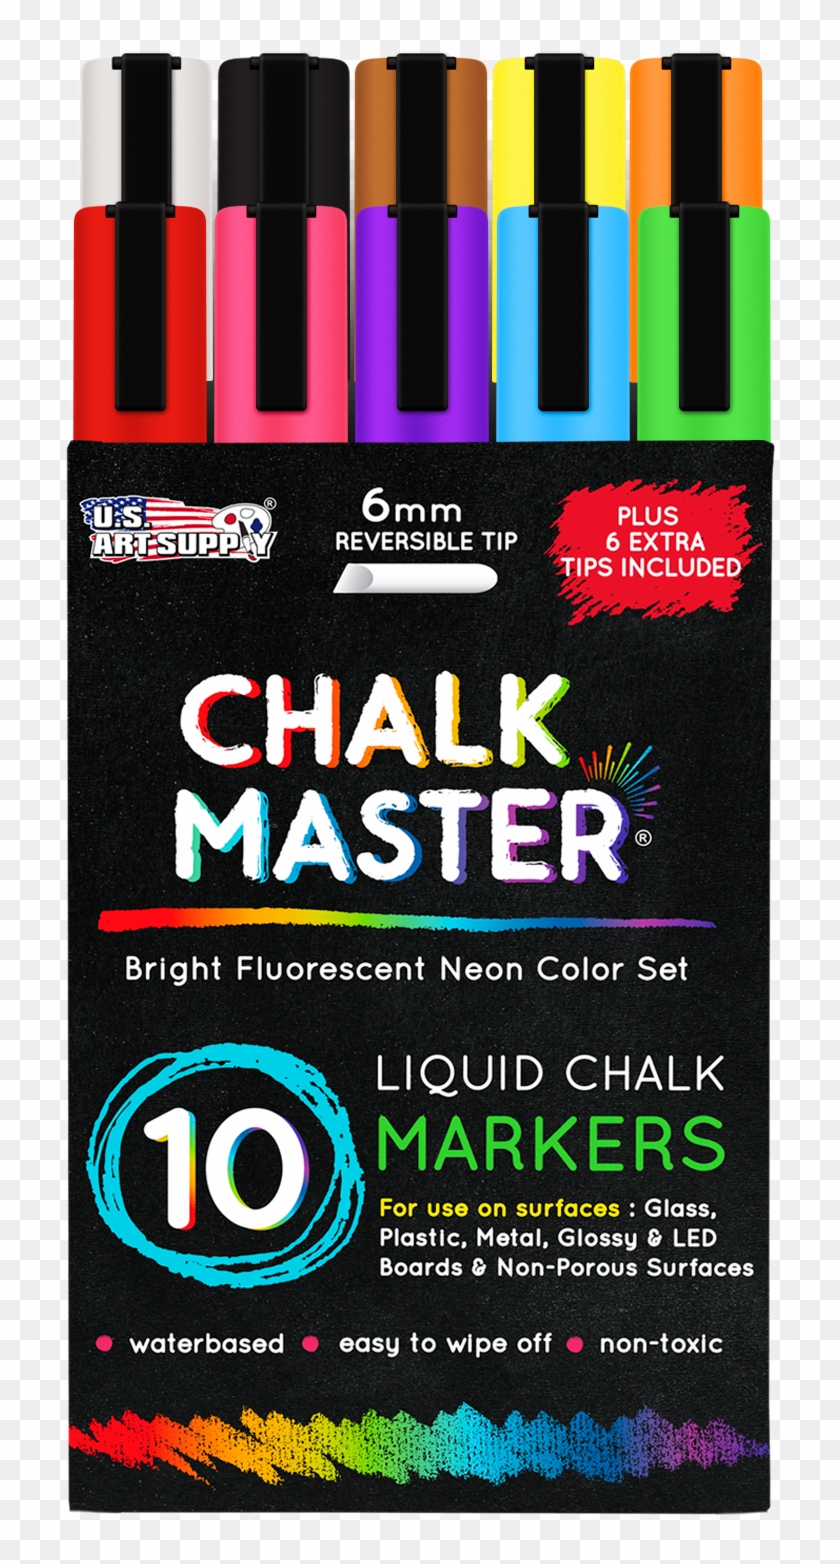 10 Bright Fluorescent Neon Liquid Chalk Marker Set - Graphic Design Clipart #5881484